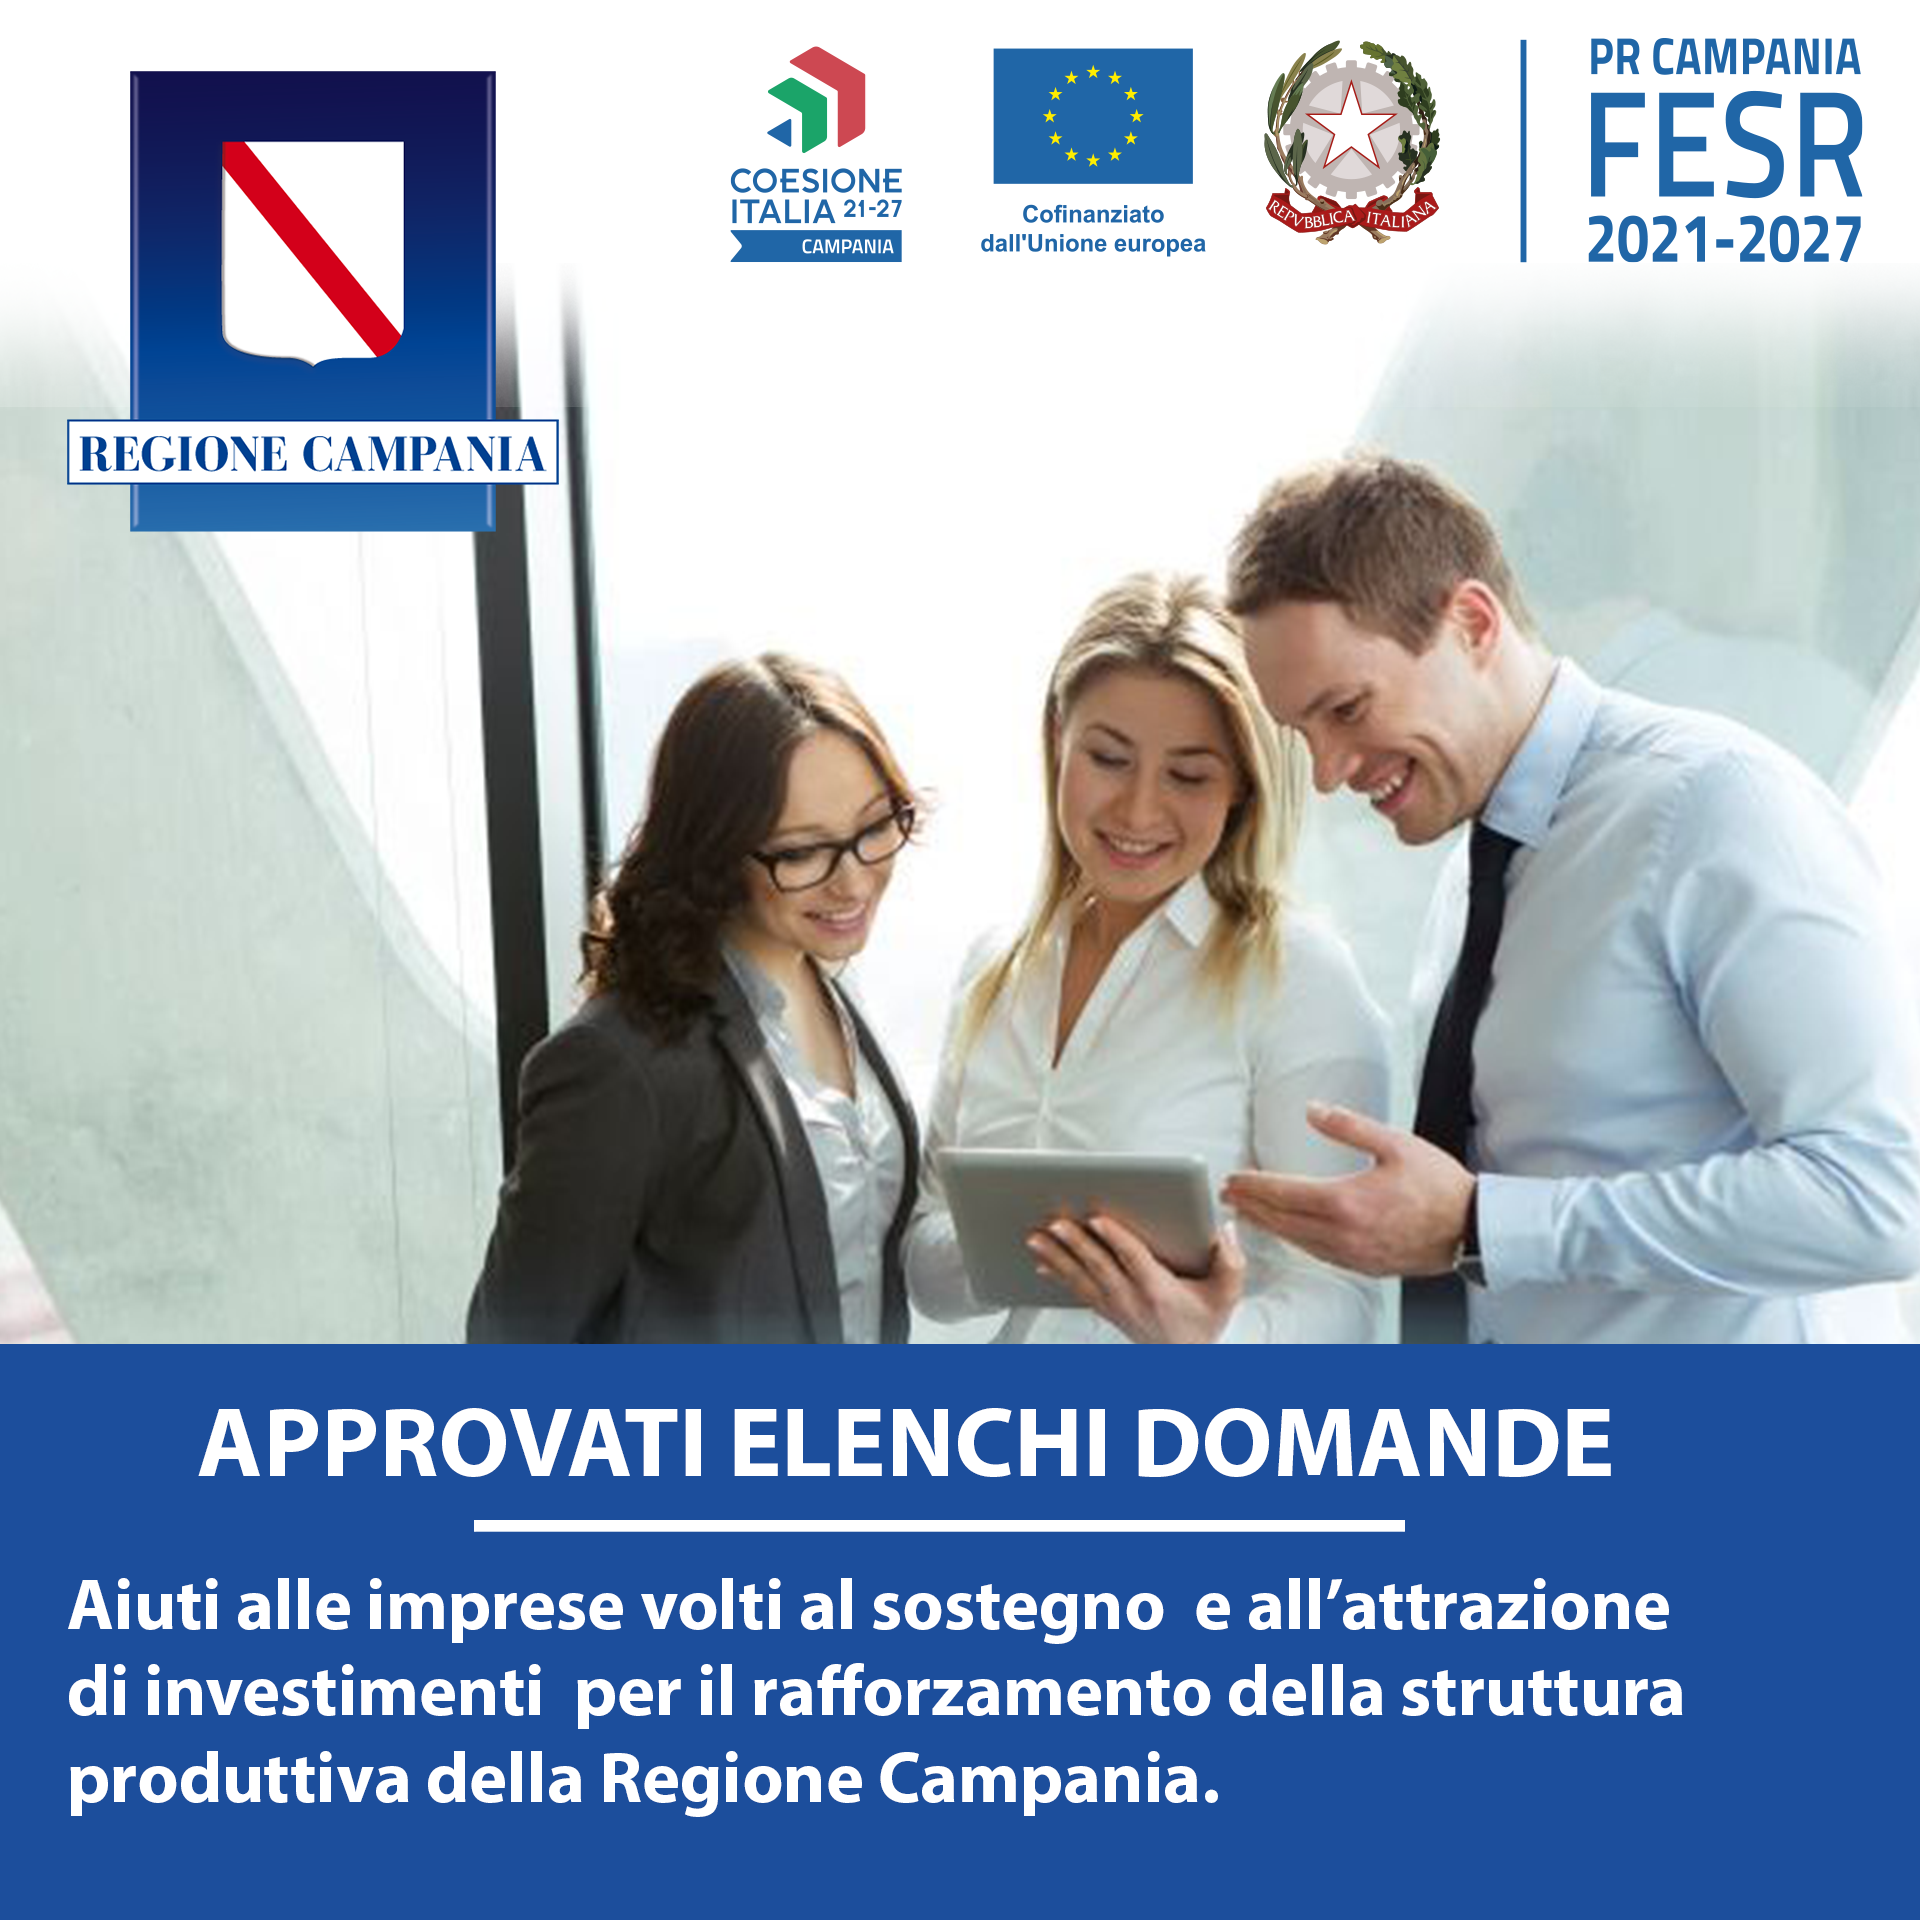 Attrazione d’investimenti per il rafforzamento della struttura produttiva della Regione Campania, approvate le graduatorie